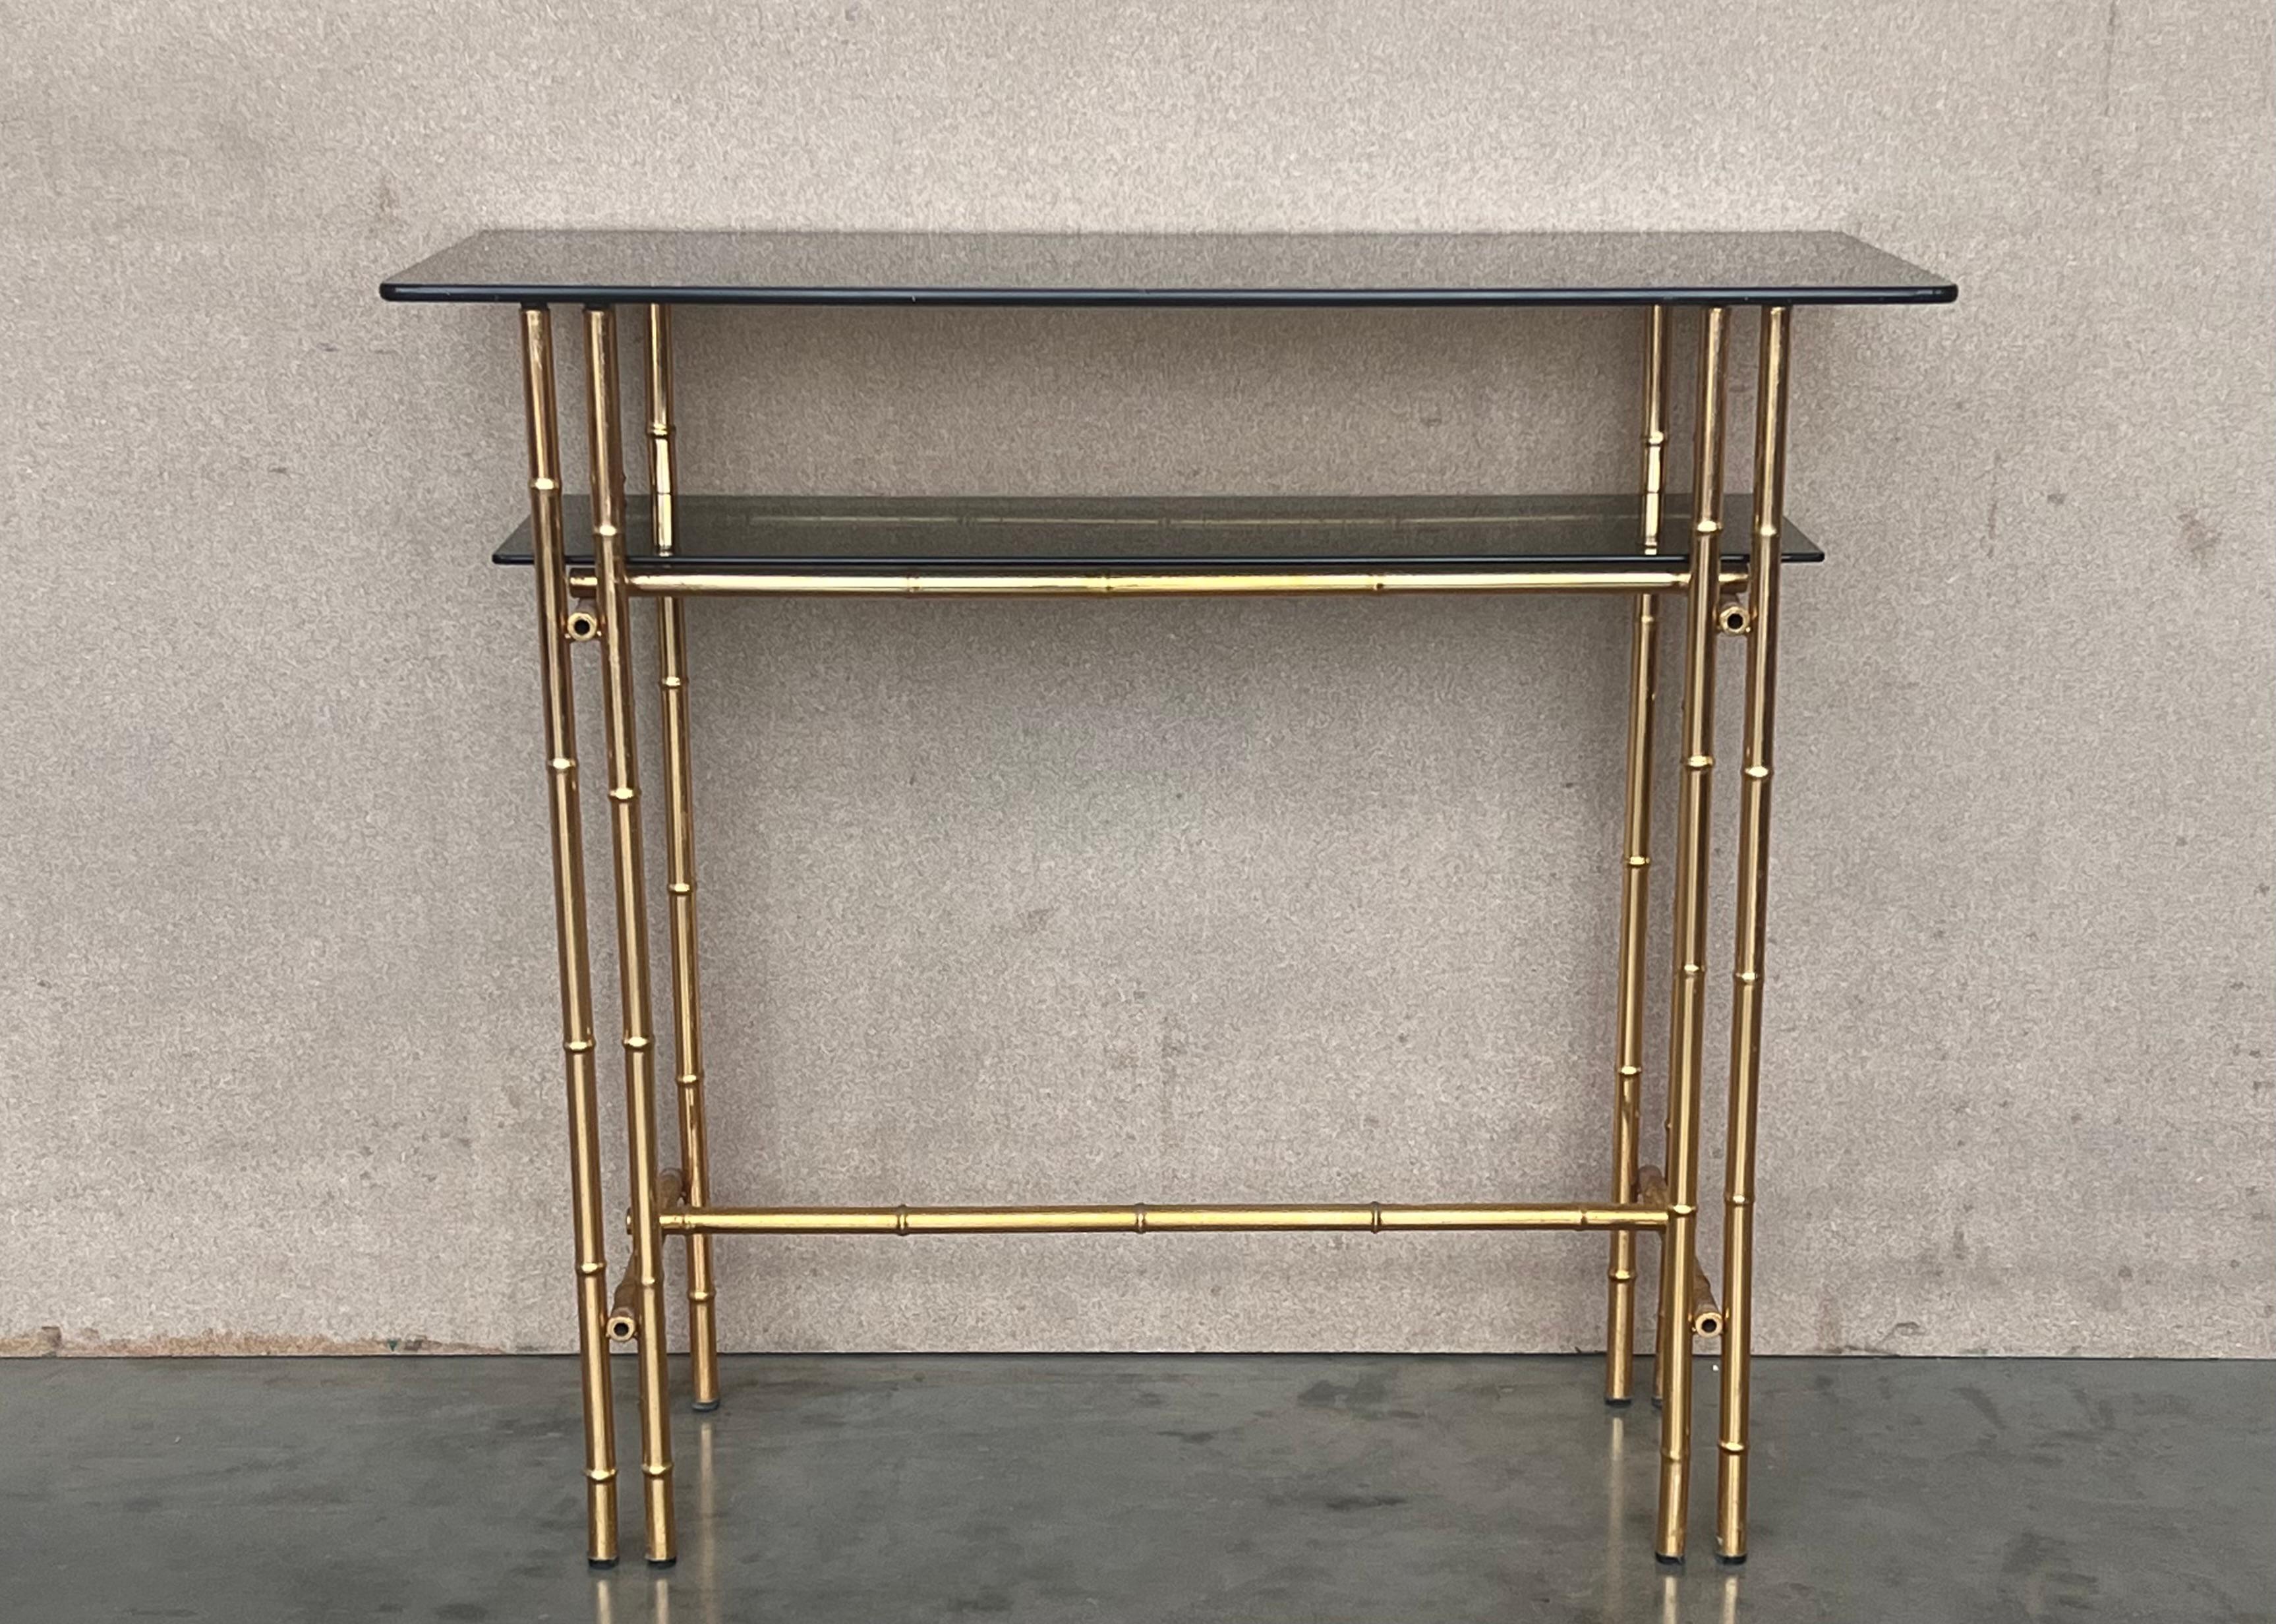 Mid-Century Modern Italienisch faux Bambus vergoldet Metall Konsole Tisch oder Eitelkeit mit Rauchglas.

Maße: Gesamthöhe: 32 Zoll
Höhe bis zum mittleren niedrigen Regal: 25.78in
